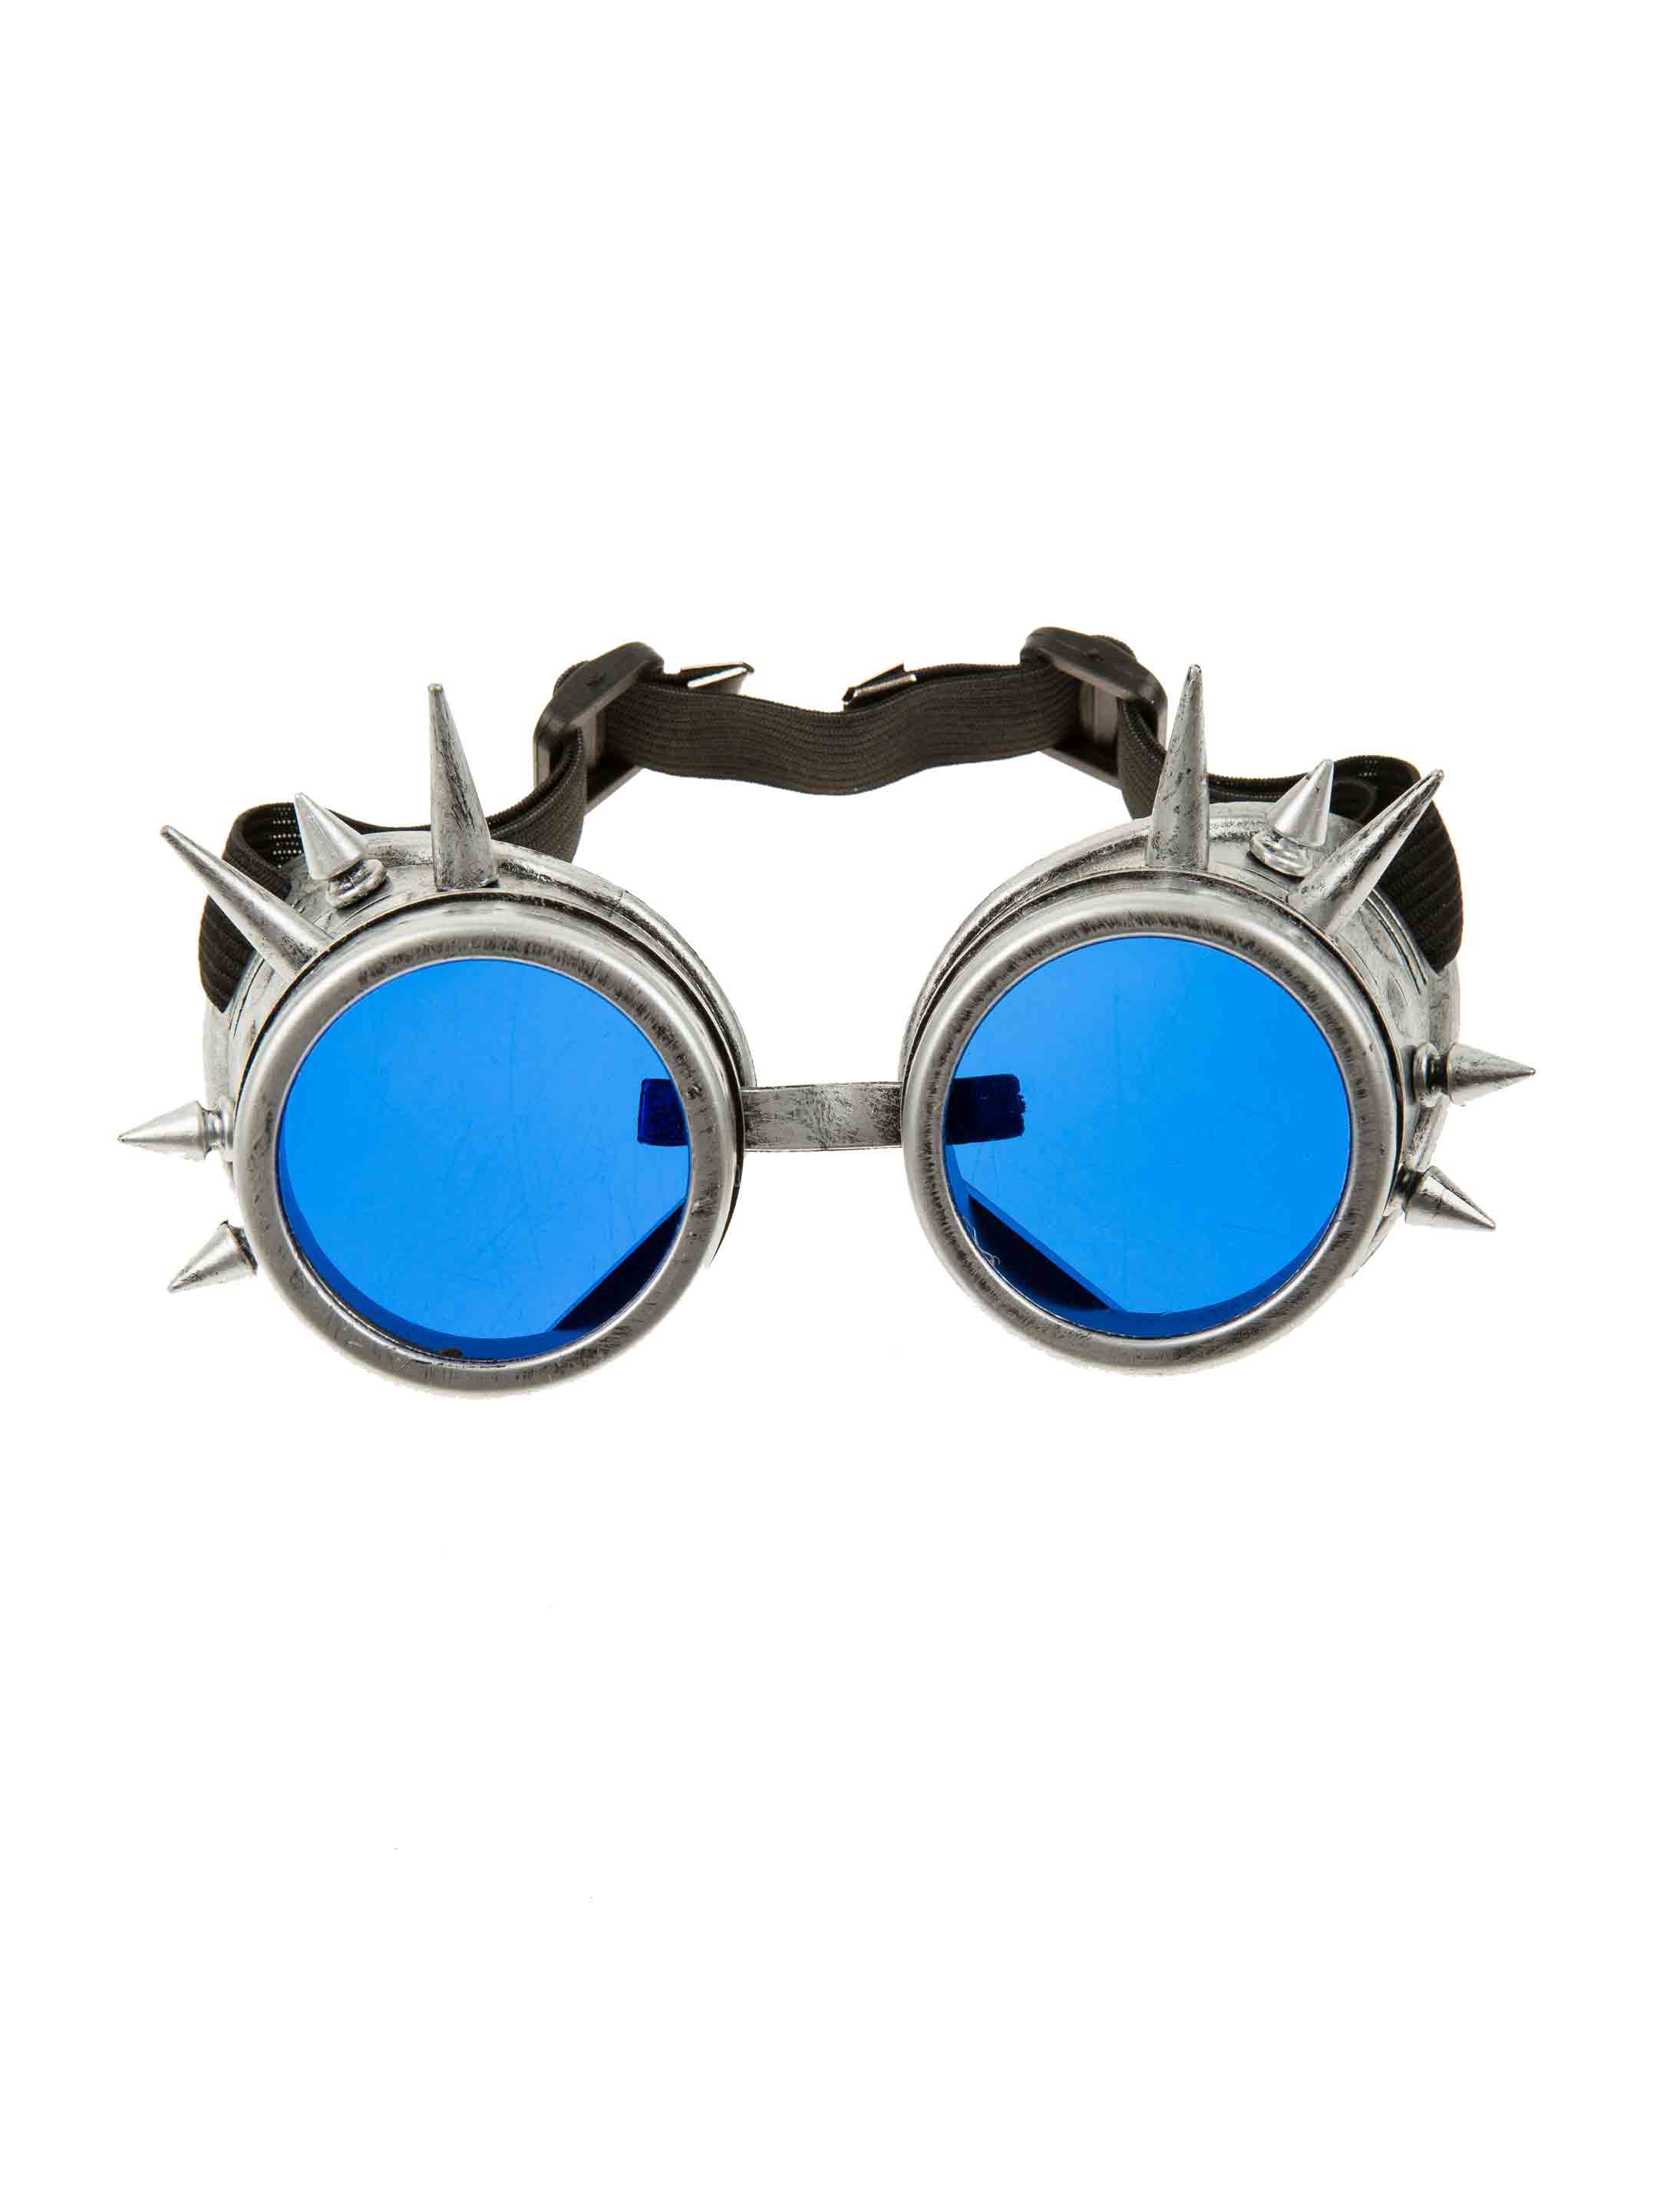 Brille Steampunk silber/blau